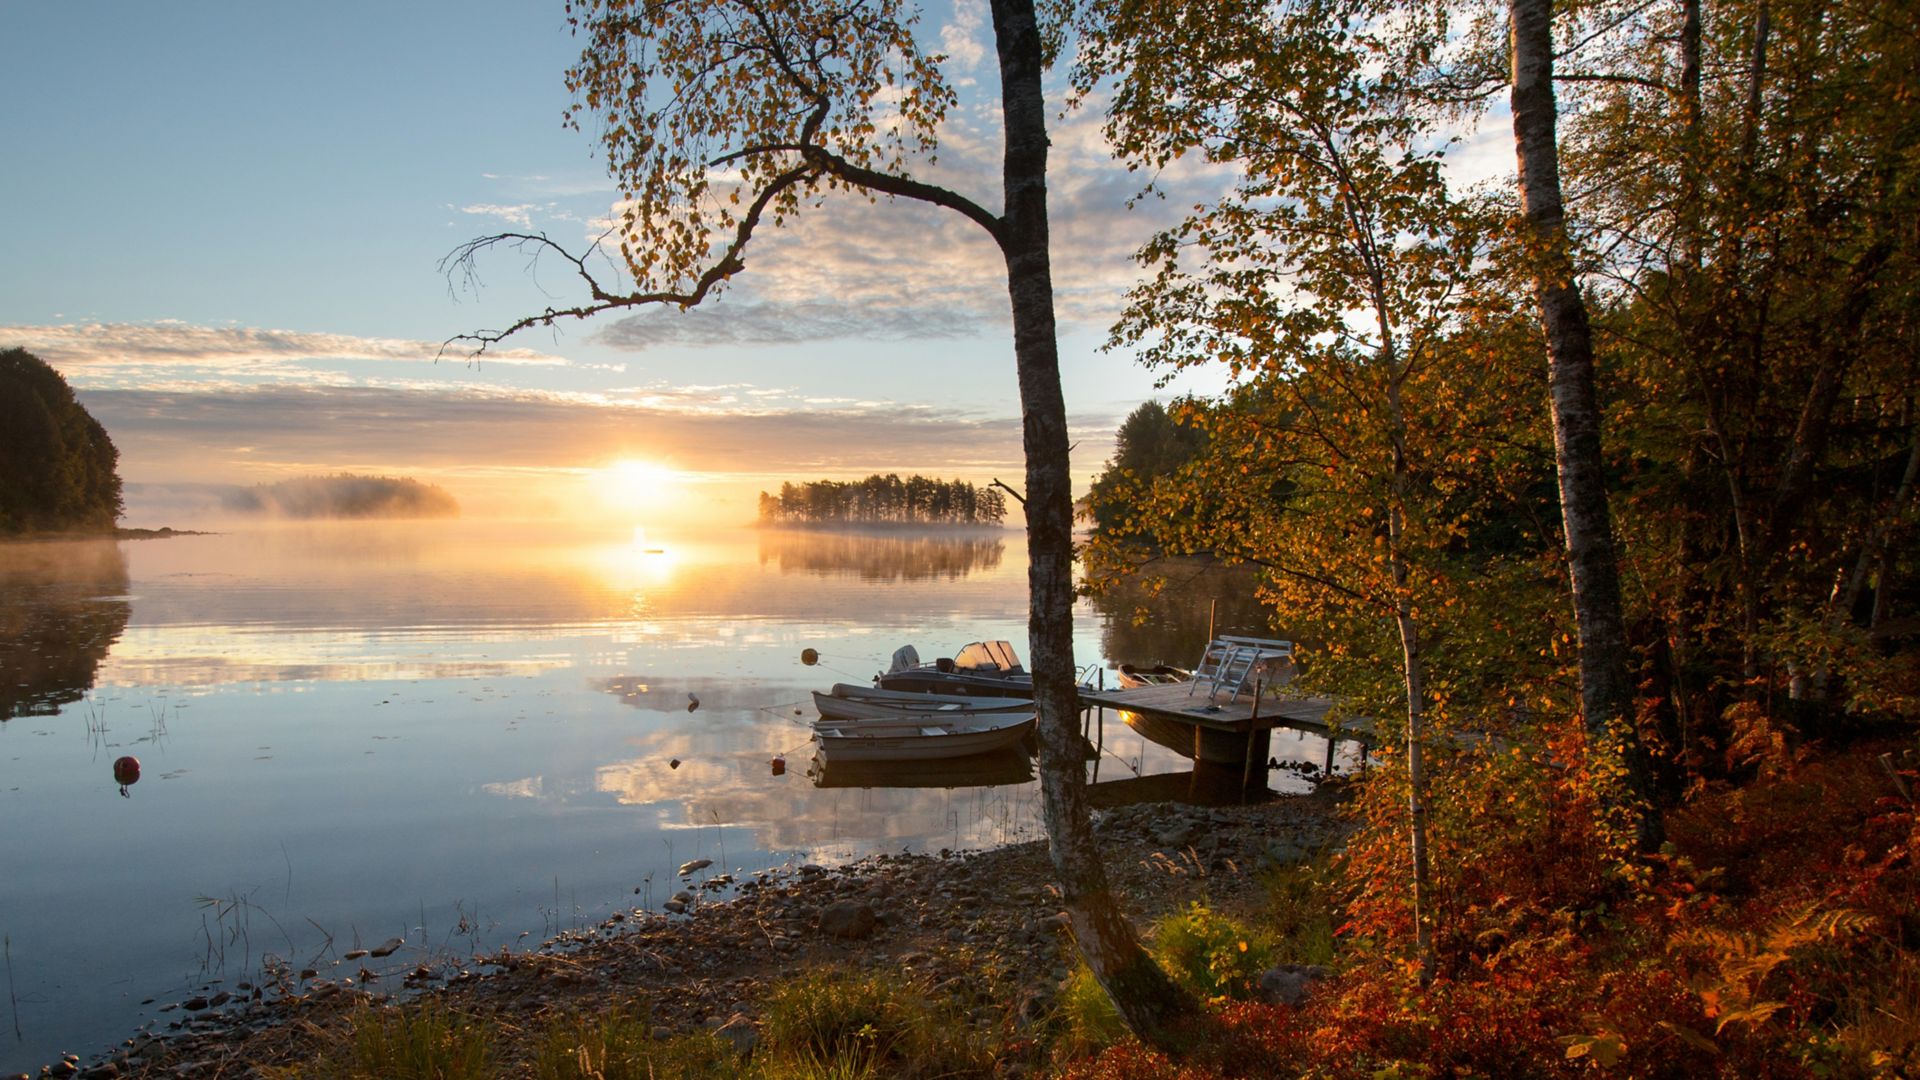 Widok jeziora w Småland, Szwecja